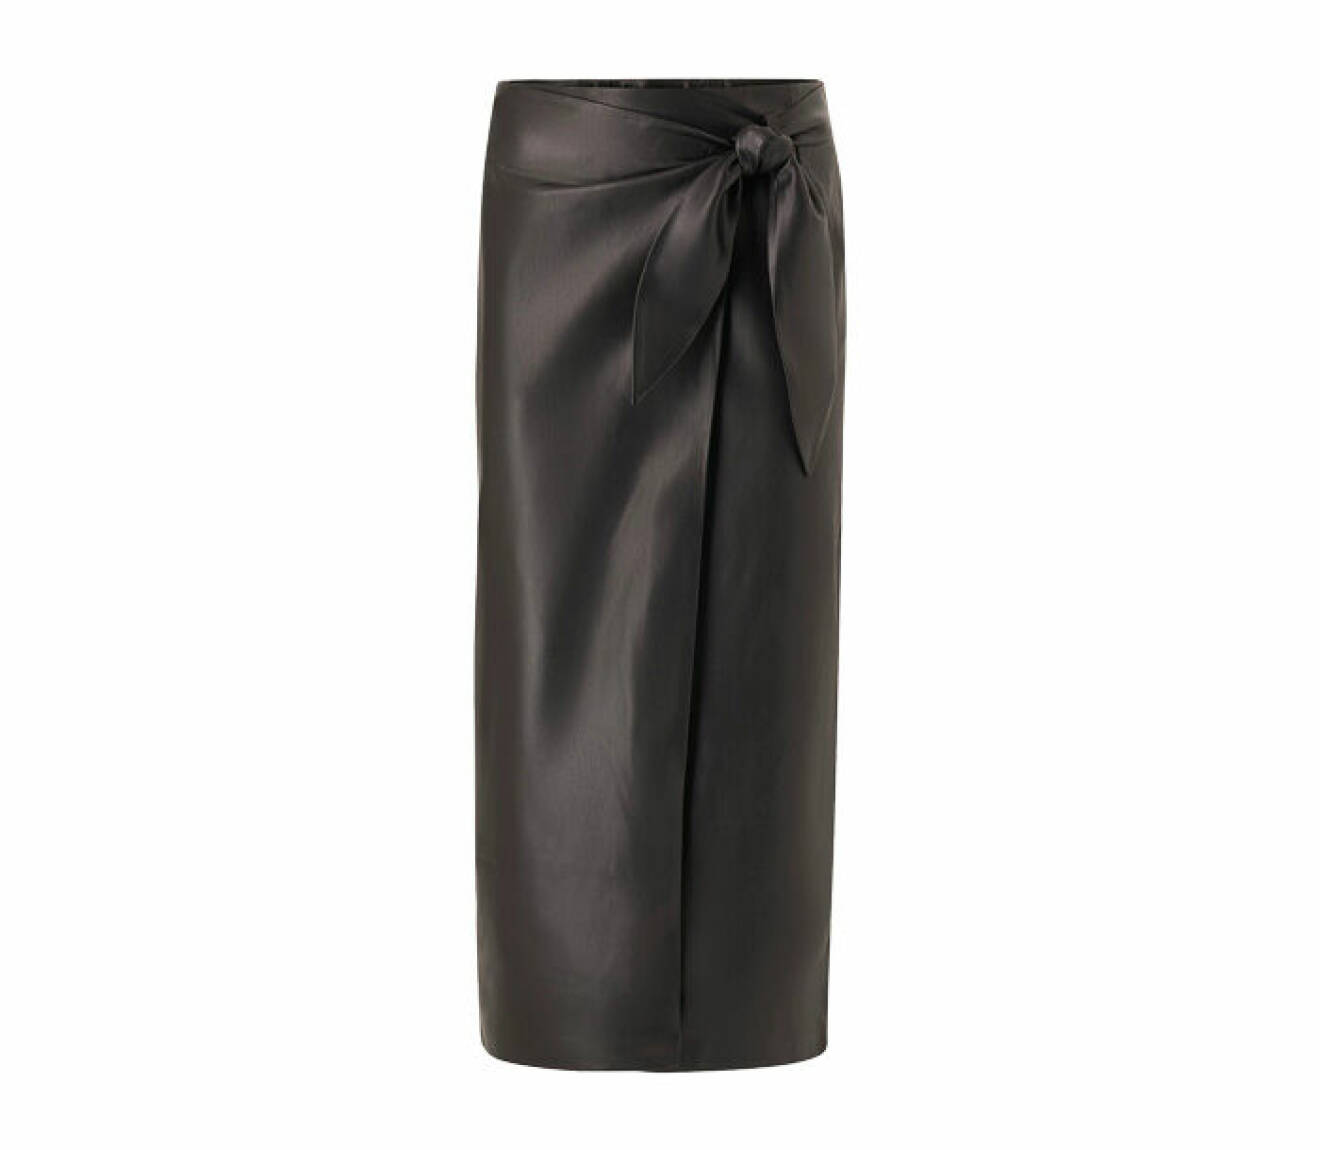 kjol i skinnimiation med knytning i midjan designad i omlott från Mango